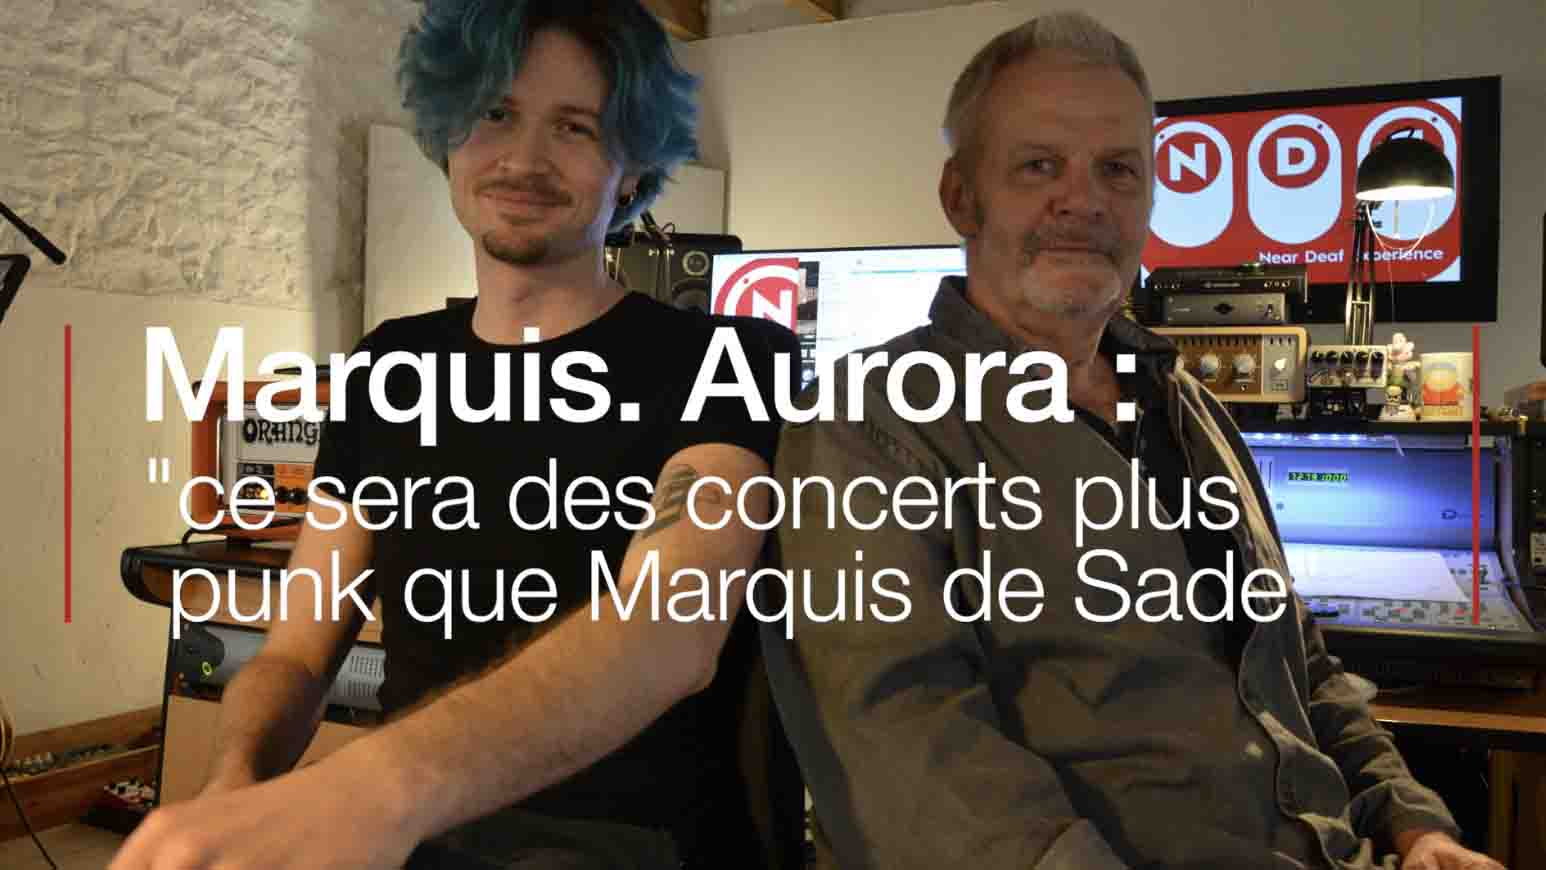 Marquis. Aurora : "ce sera des concerts plus punk que Marquis de Sade" (Le Télégramme)